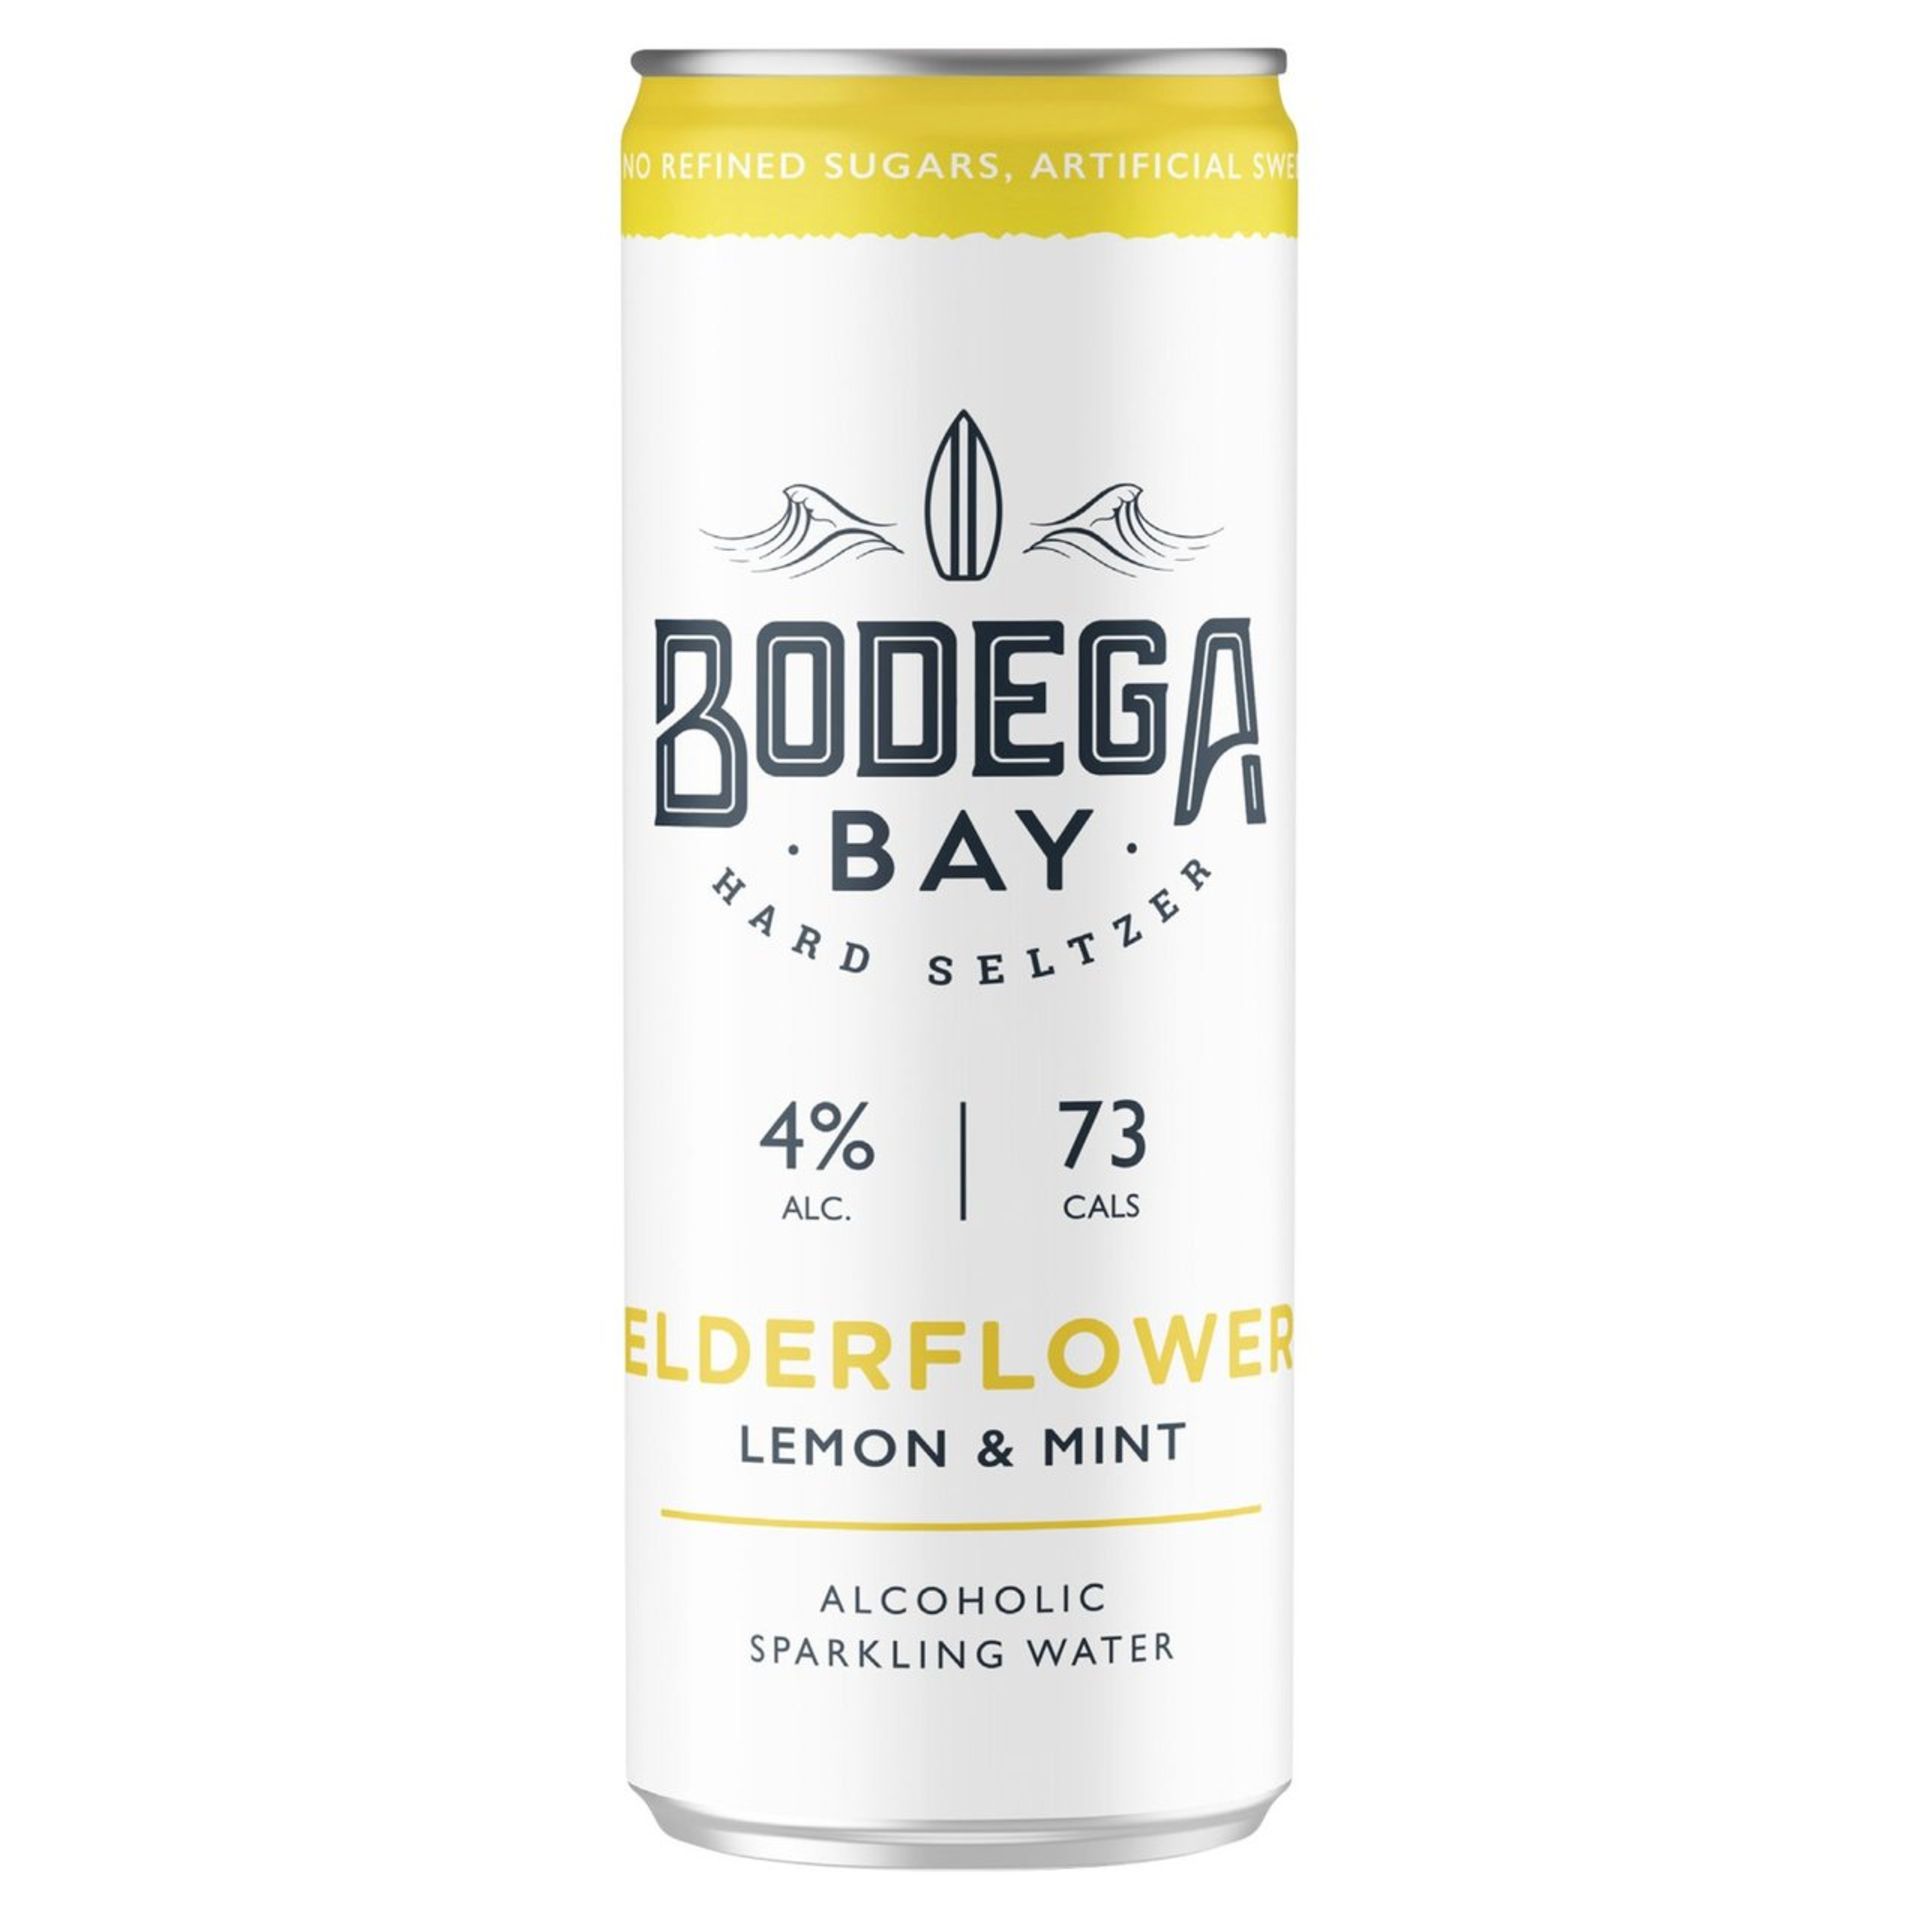 24 x Bodega Bay Hard Seltzer 250ml Alcoholic Sparkling Water Drinks - Elderflower Lemon & Mint - Image 2 of 3